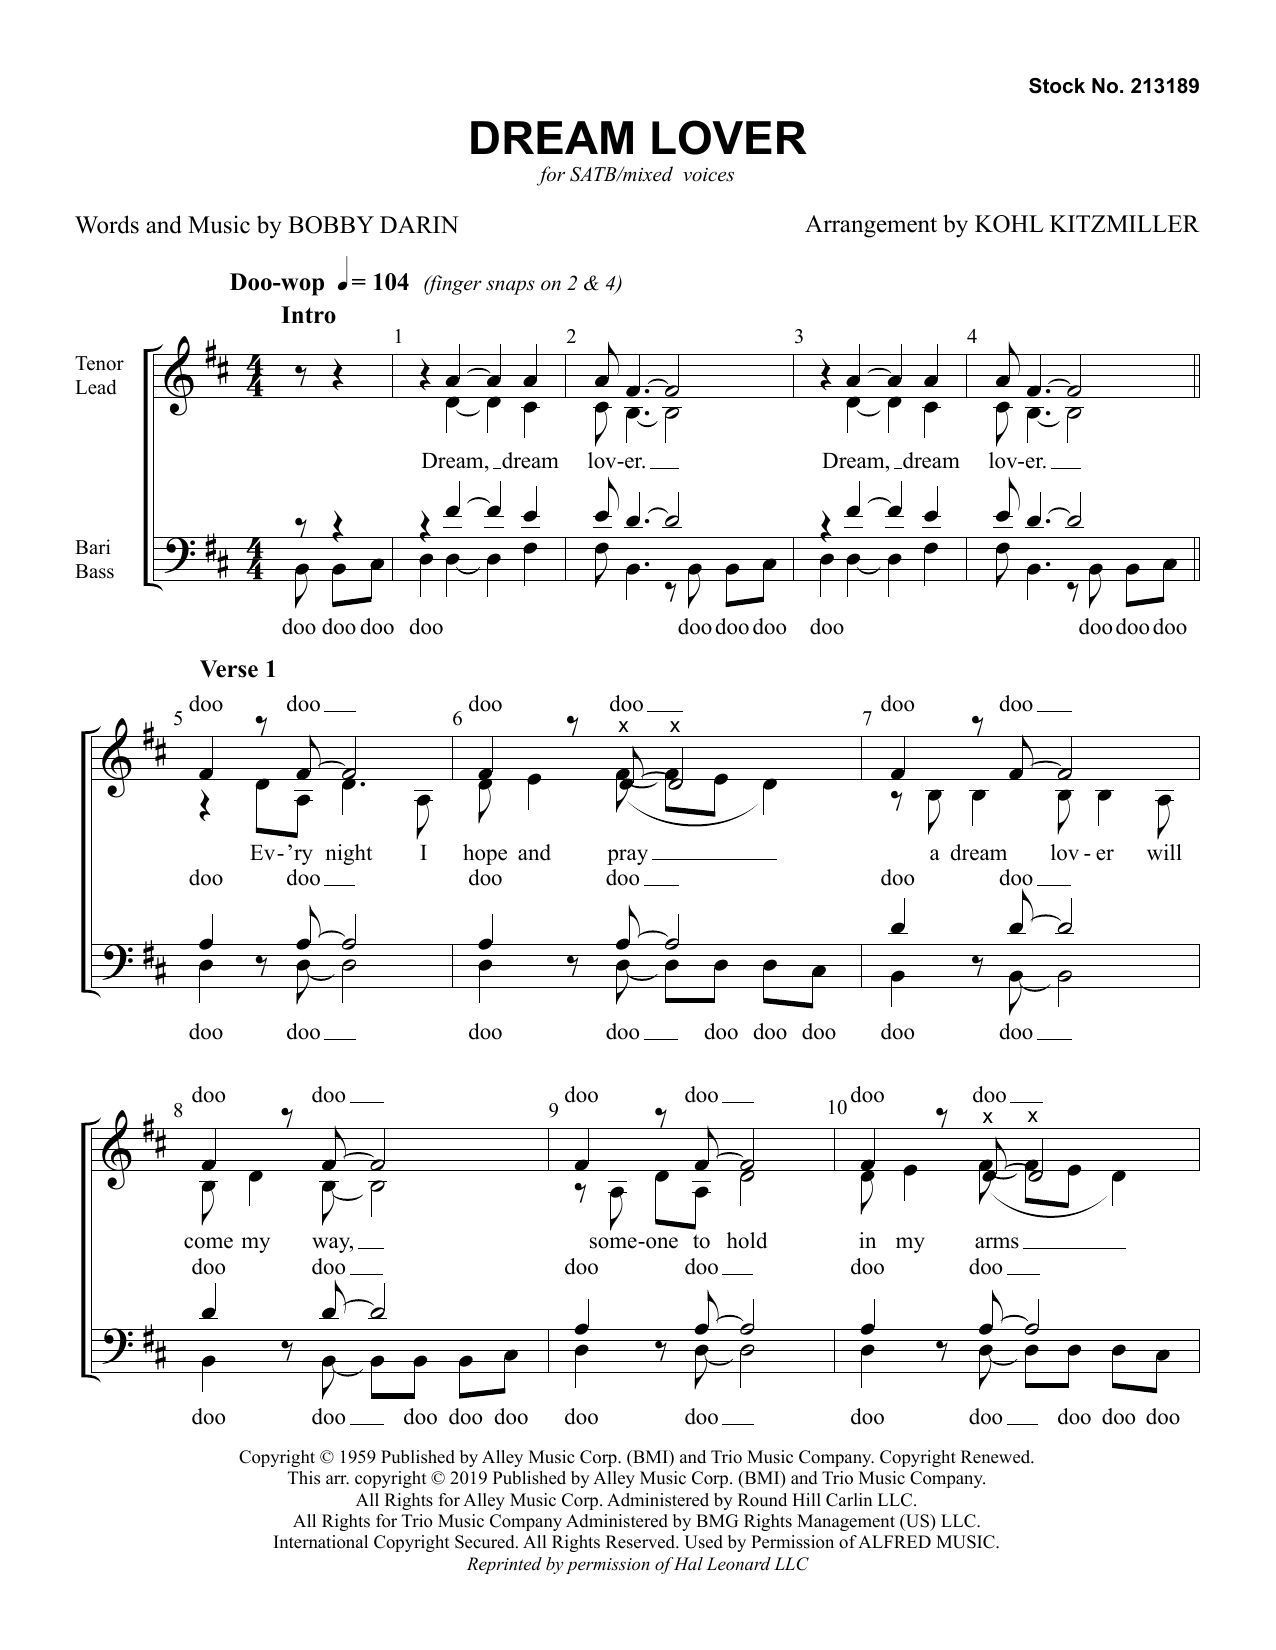 The Manhattan Transfer Dream Lover (arr. Kohl Kitzmiller) Sheet Music Notes & Chords for SSA Choir - Download or Print PDF